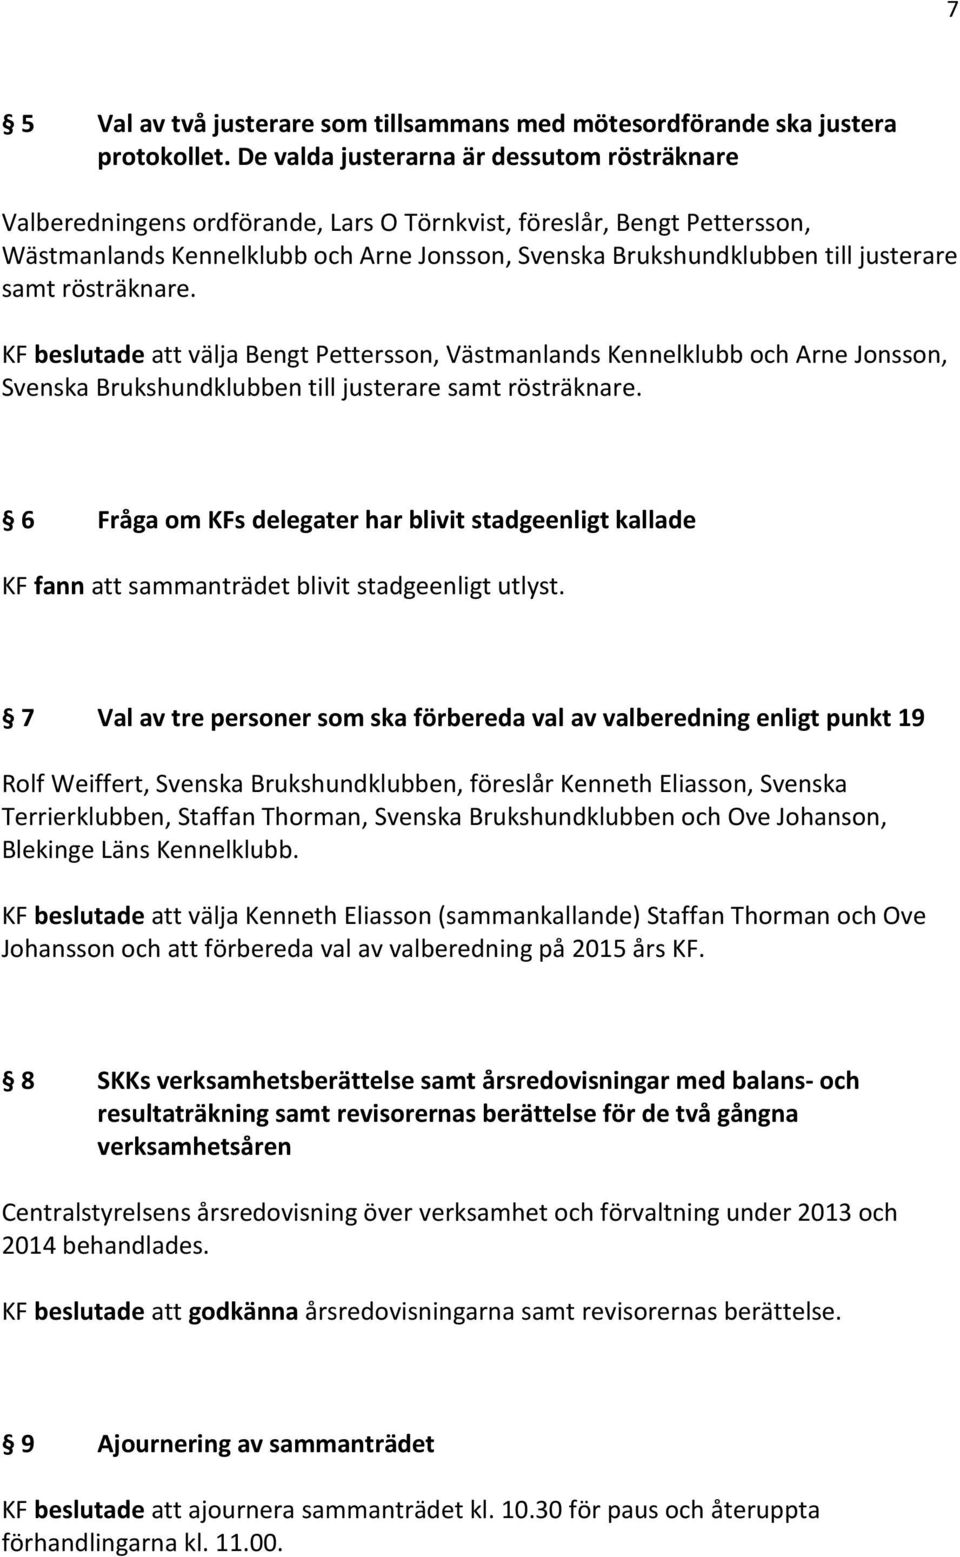 justerare samt rösträknare. KF beslutade att välja Bengt Pettersson, Västmanlands Kennelklubb och Arne Jonsson, Svenska Brukshundklubben till justerare samt rösträknare.